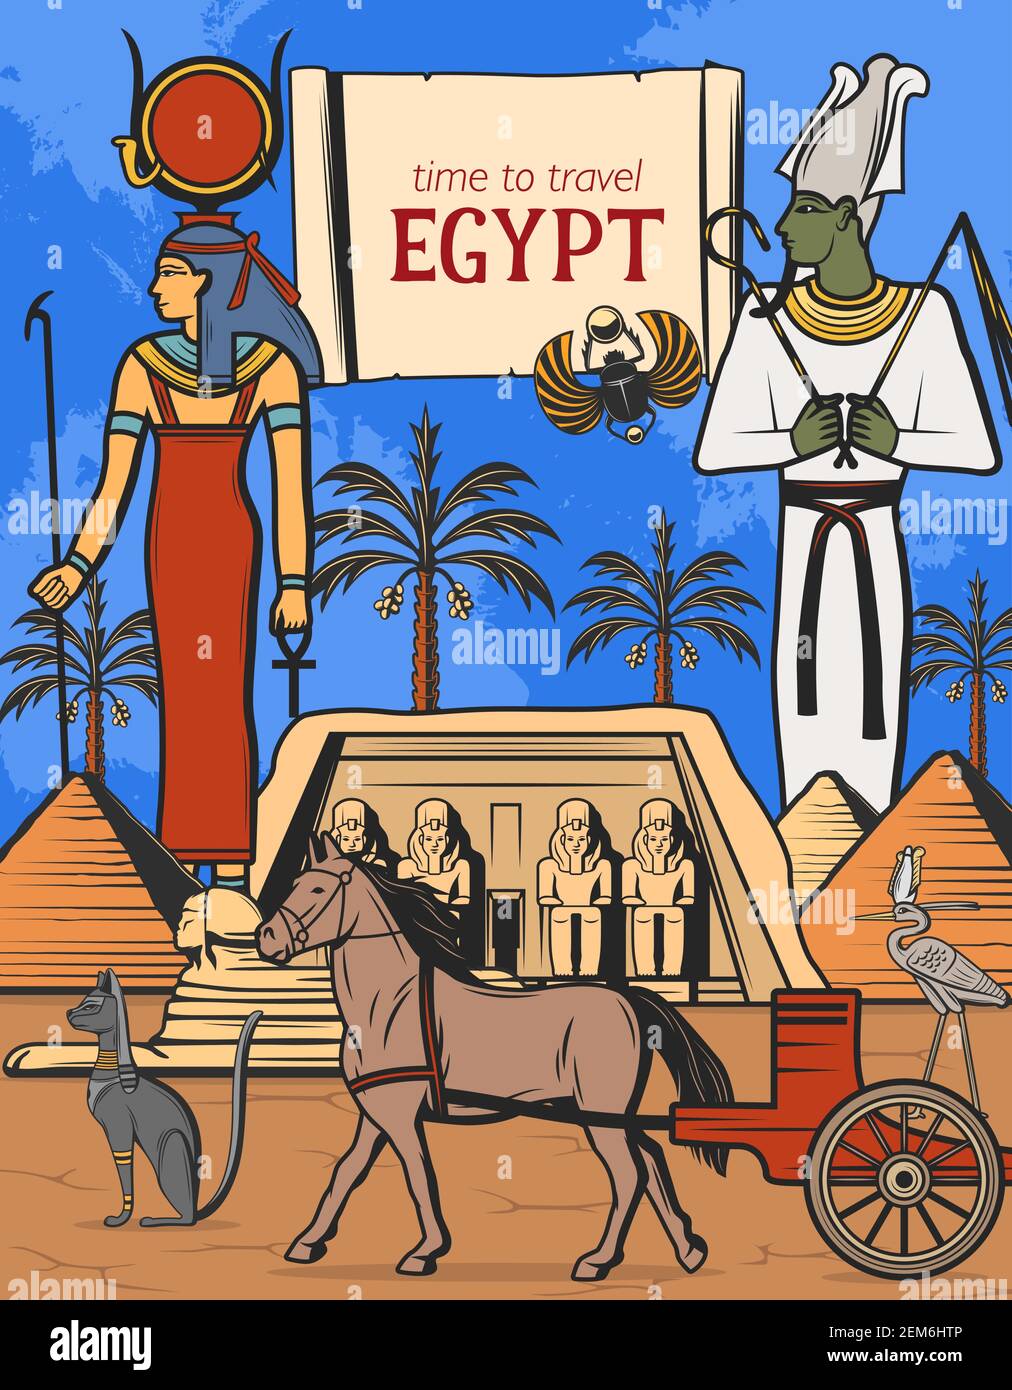 Reise nach Ägypten Vektor-Design der alten ägyptischen pharao Pyramiden, Götter und Tempel. Sphynx, Osiris und Isis Göttin mit ankh Symbol und Stab, Katze s Stock Vektor